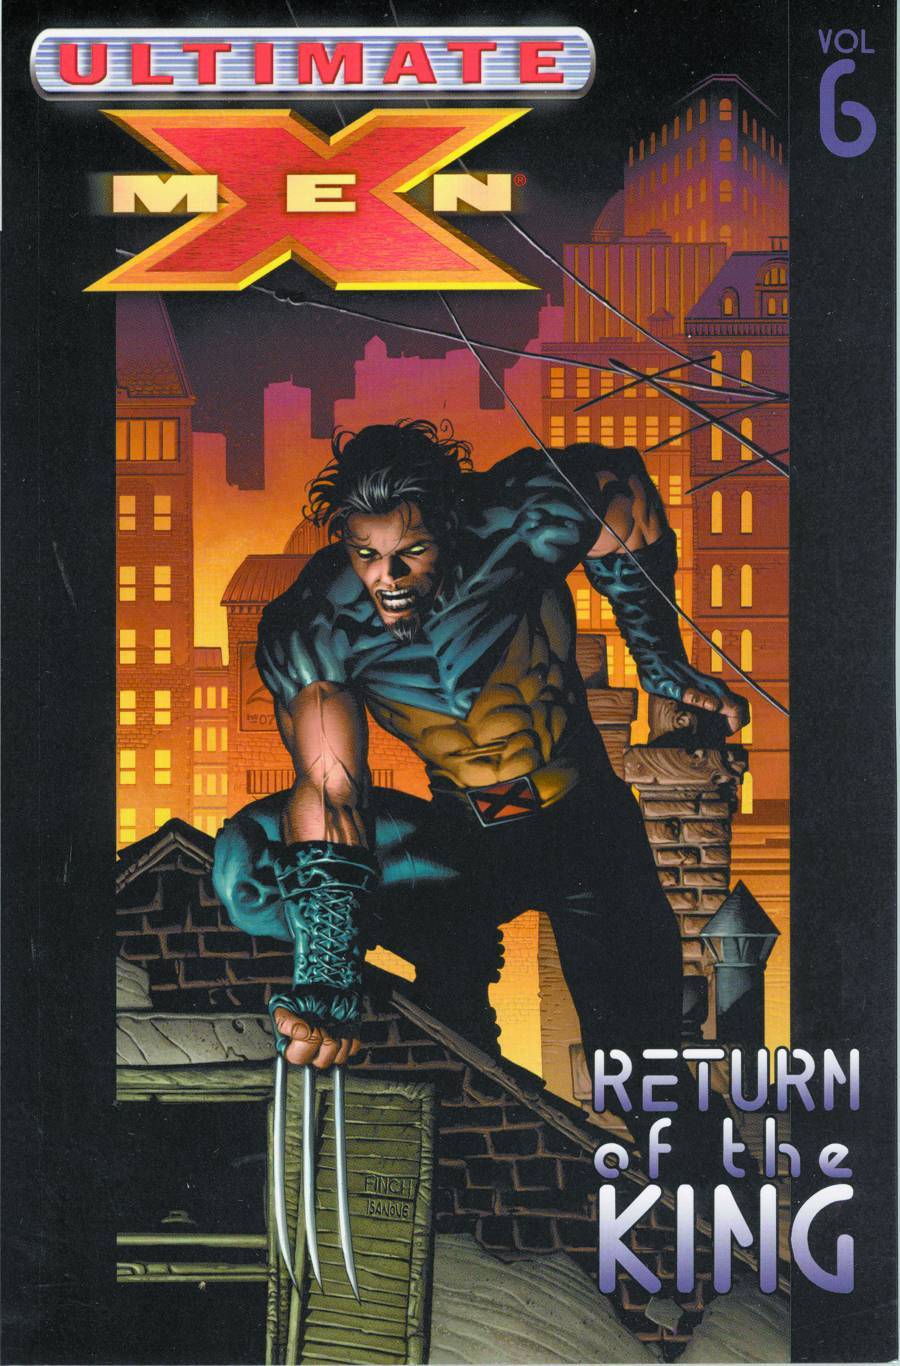 Ultimate X-Men Graphic Novel Volume 6 Return of the King